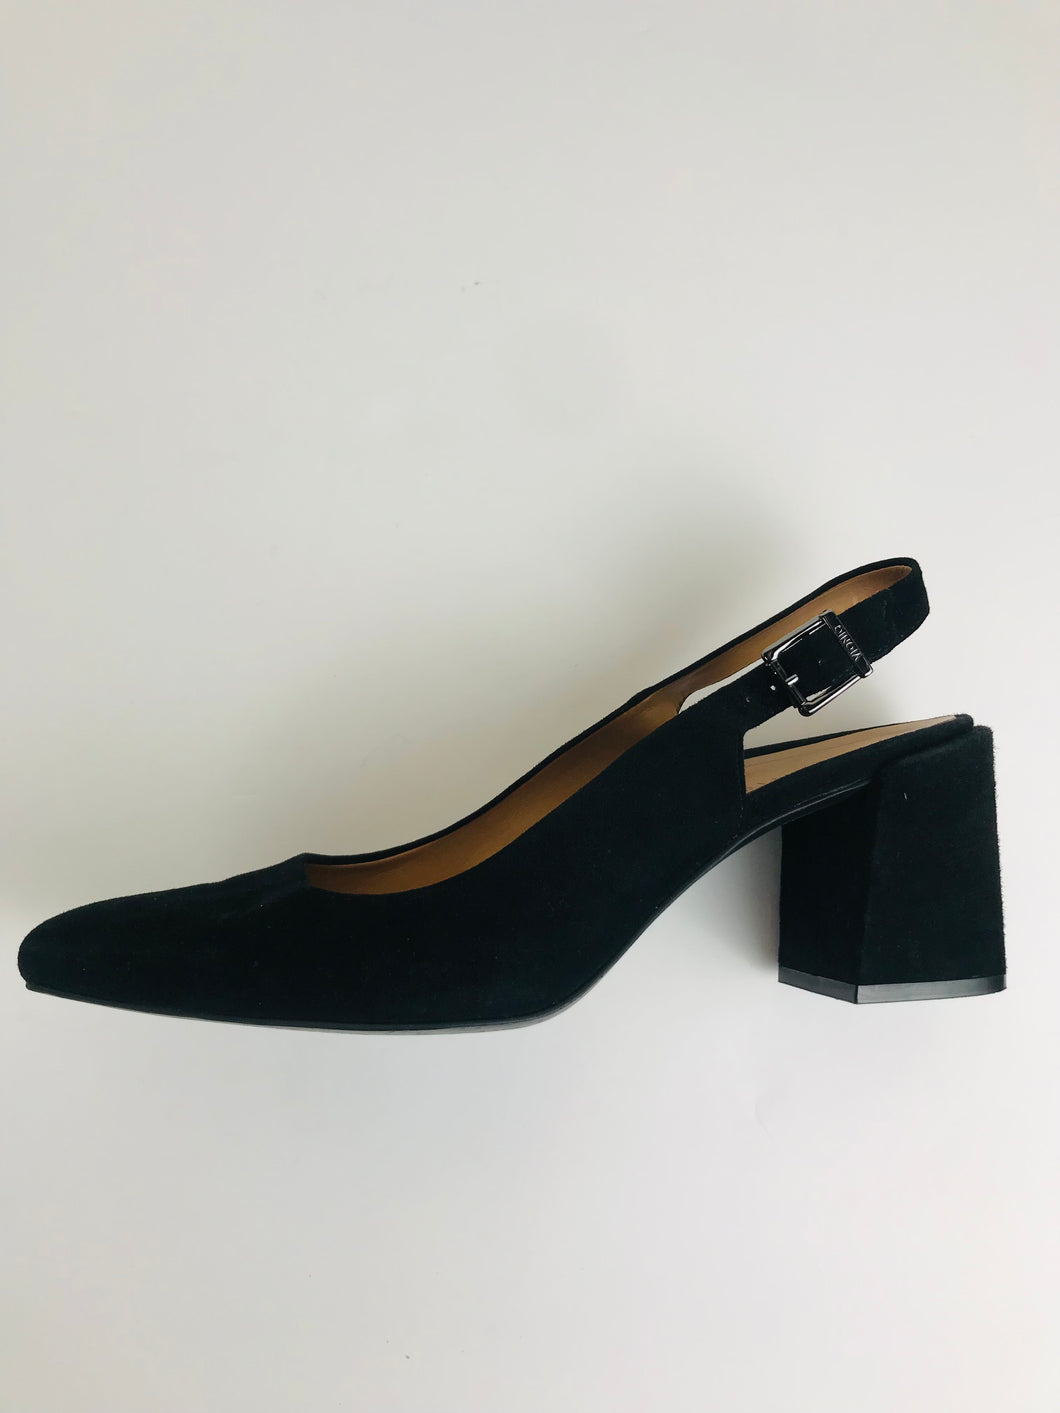 Vionic Women's Suede Heels | UK6.5 | Black